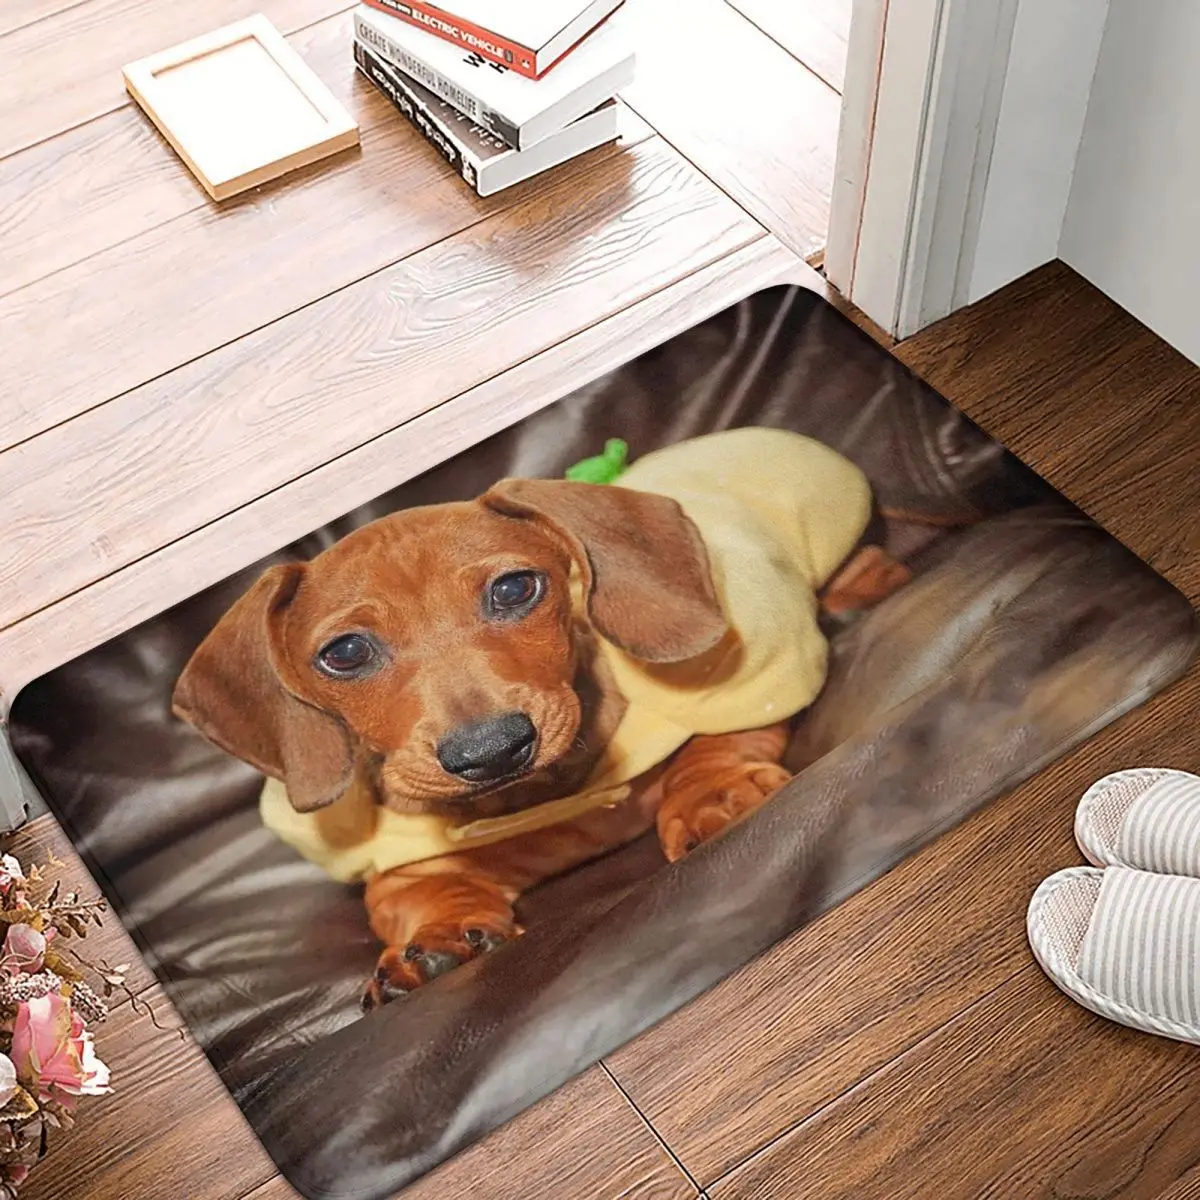 כלב תחש שטיחון אמבטיה מודפס Polyeste מחצלת המטבח בבית במסדרון סופג הרצפה שטיח שטיח הרצפה שטיח האמבטיה